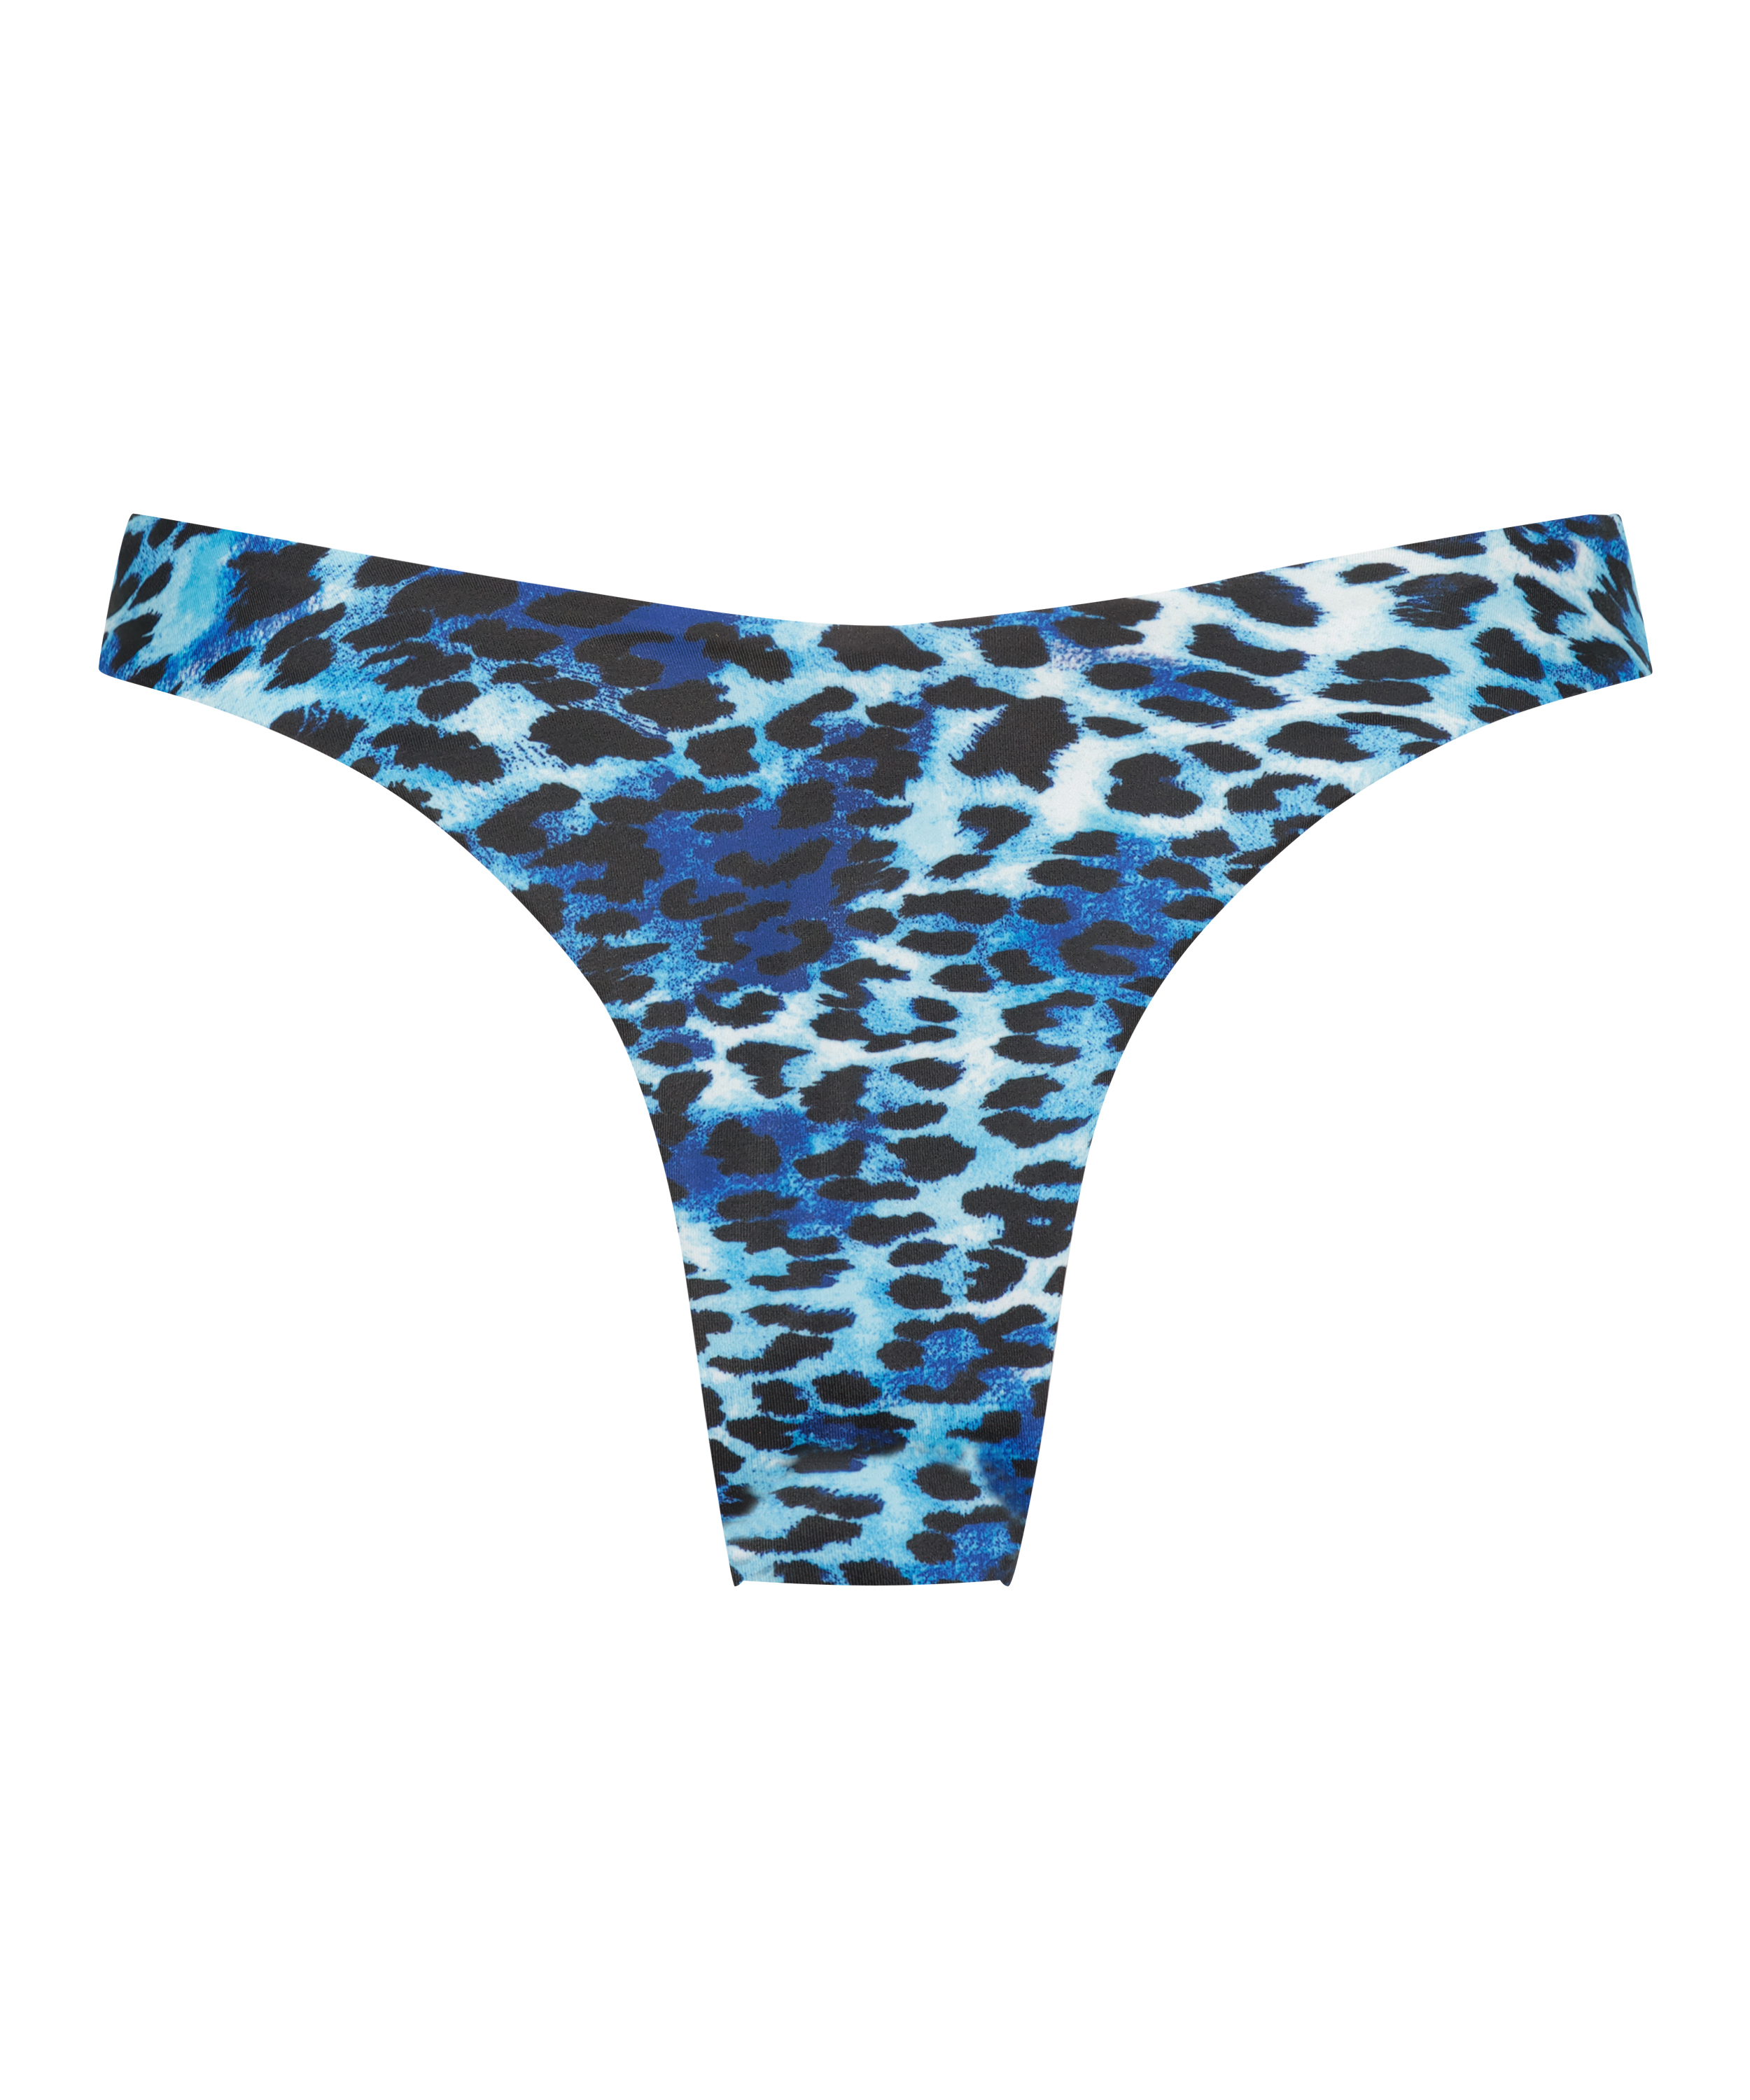 Leo high-cut bikini bottoms, Blue, main